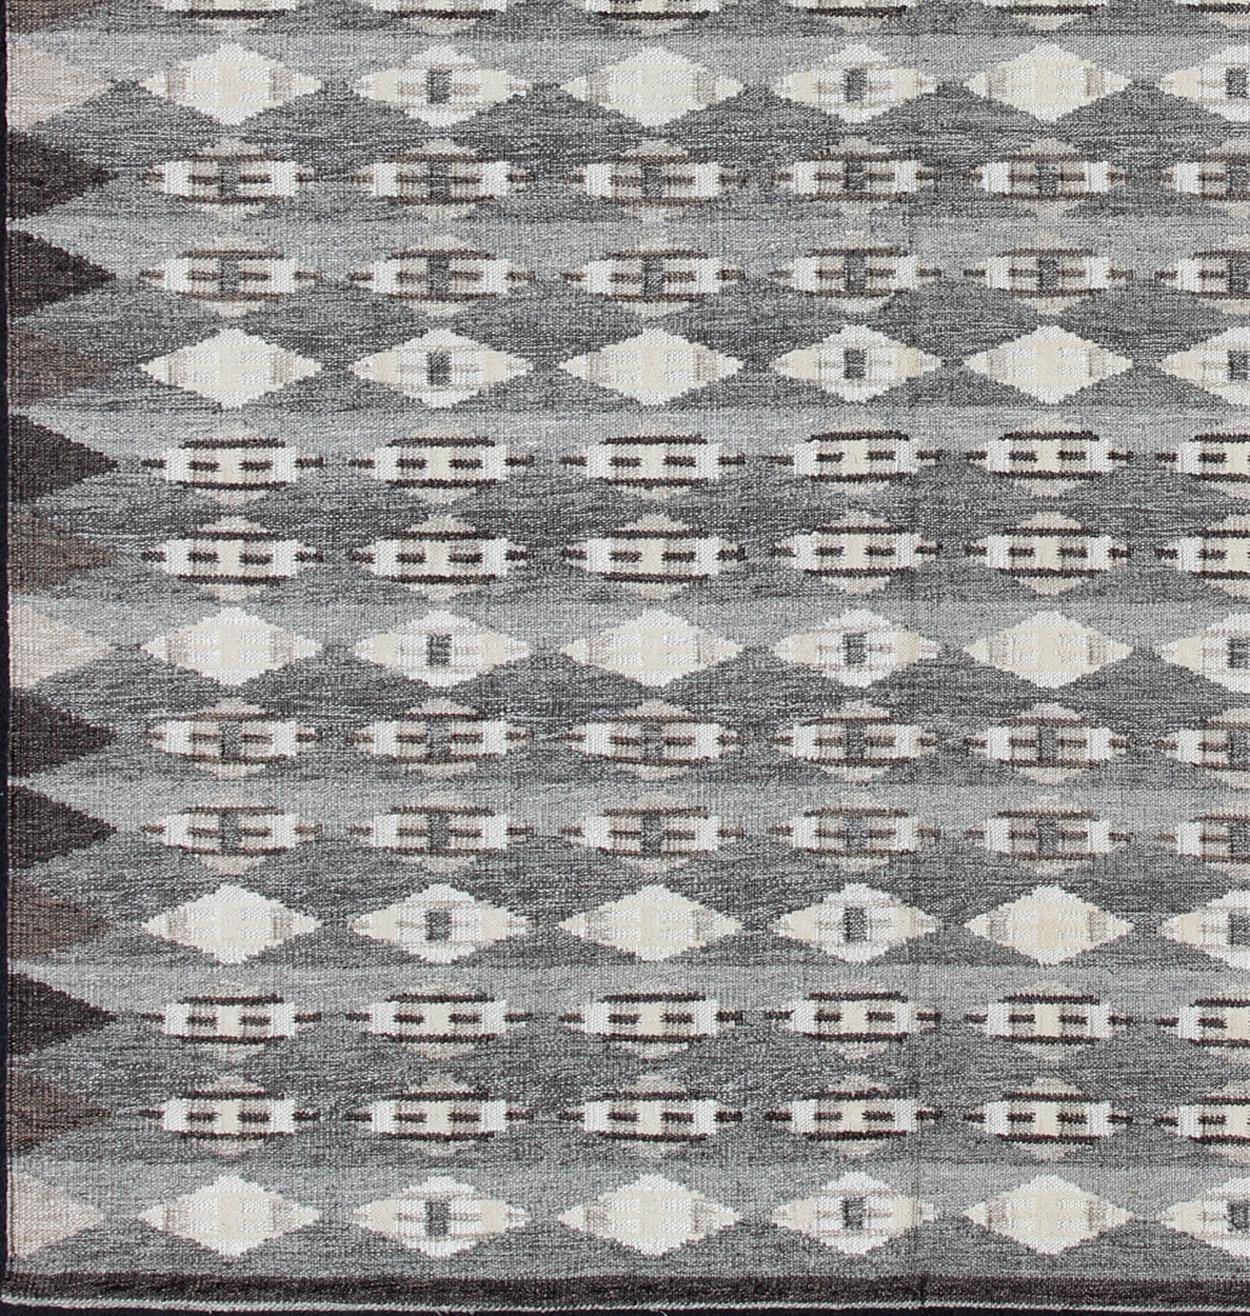 Großer moderner skandinavischer Flachgewebe-Teppich mit geometrischem Design in Grau und Braun.  Rug/KHN-502-SW-09, Dieser skandinavische Flachgewebe-Teppich ist von den Arbeiten schwedischer Textildesigner des frühen bis mittleren 20. Jahrhunderts